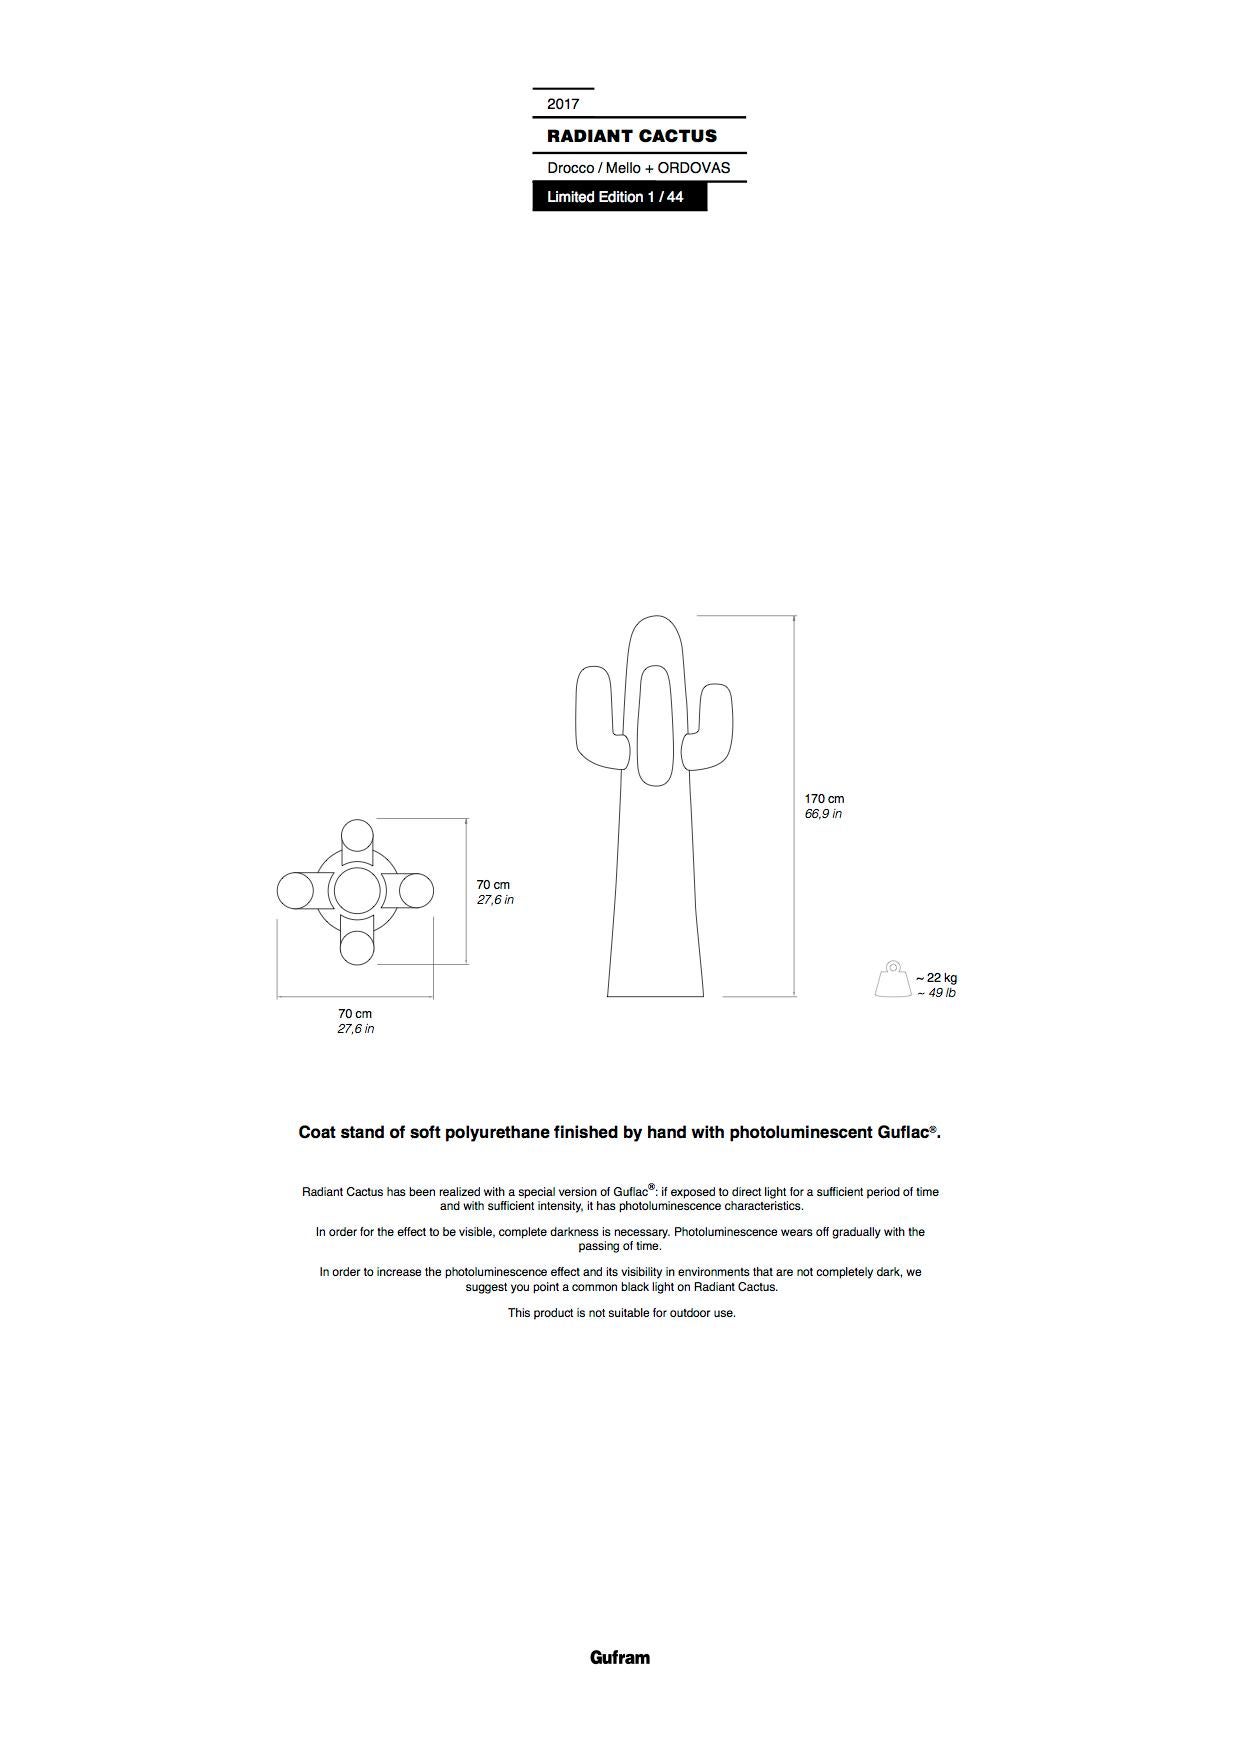 Gufram Radiant Cactus Sculptural Coatrack von Drocco & Mello und Ordovas (Schaumstoff) im Angebot